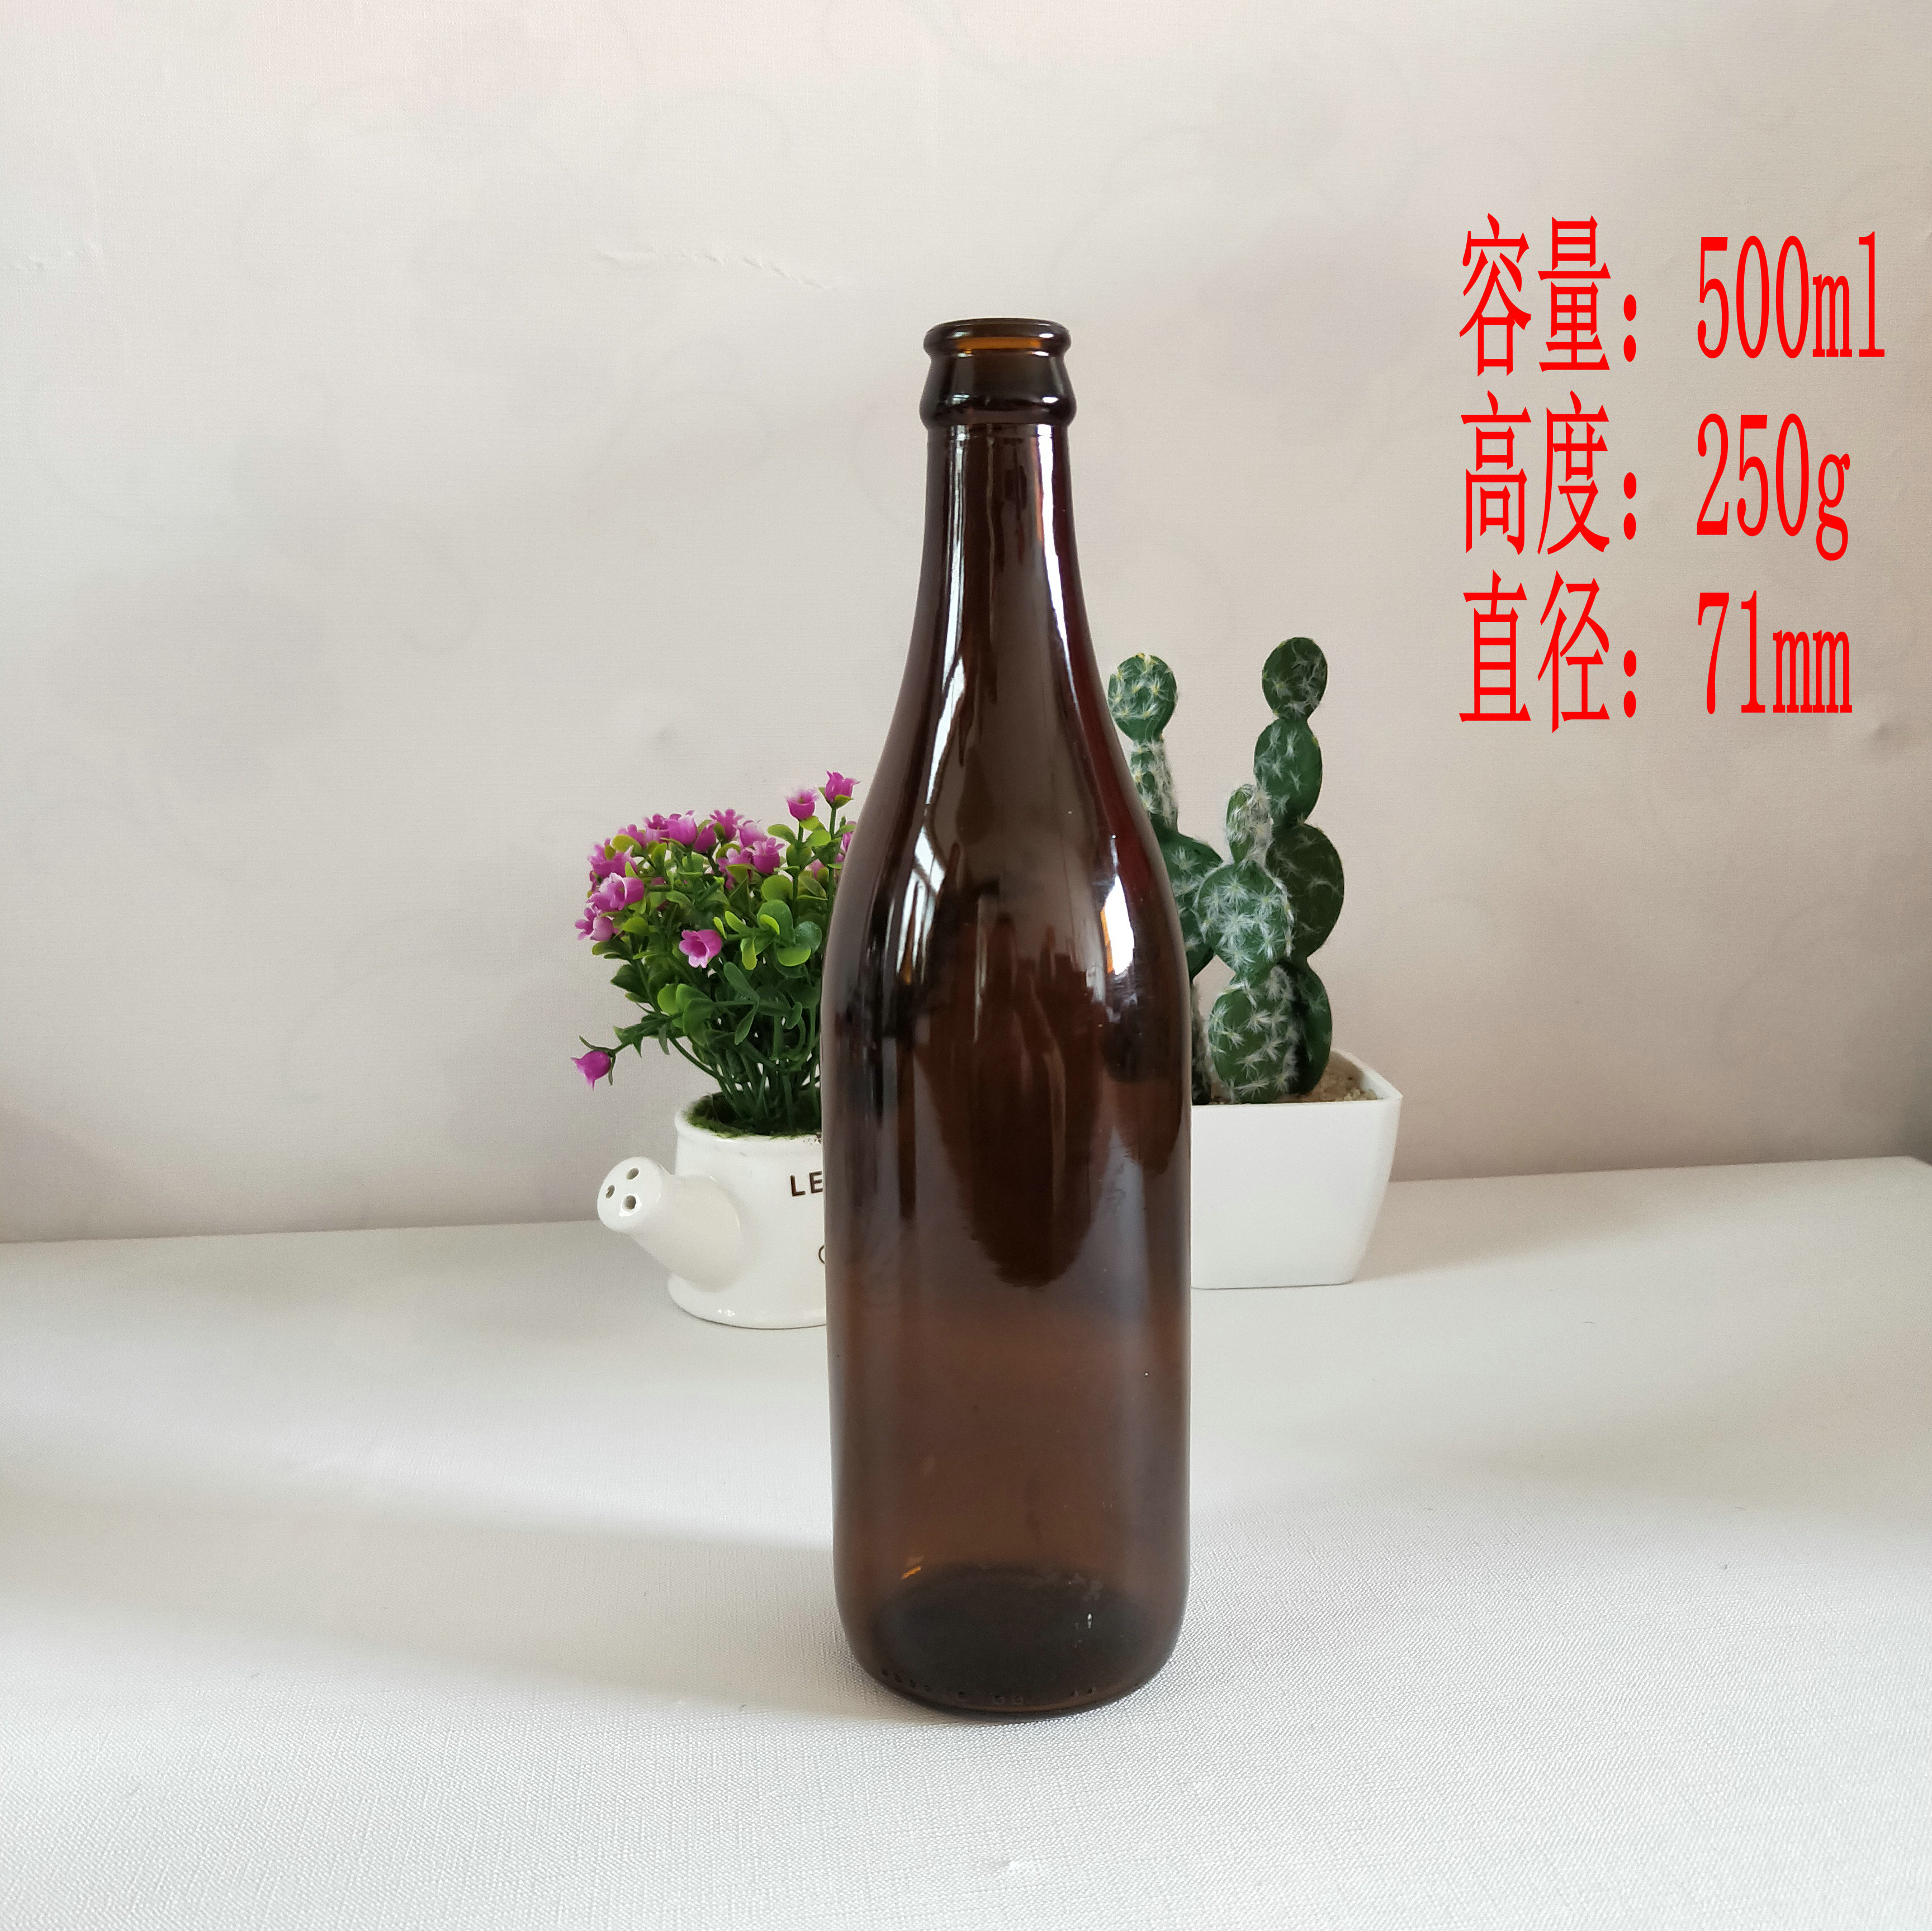 啤酒瓶生产厂家225ml235ml275ml330ml500ml650ml 啤酒玻璃瓶食品包装玻璃制品生产商 玻璃啤酒瓶1